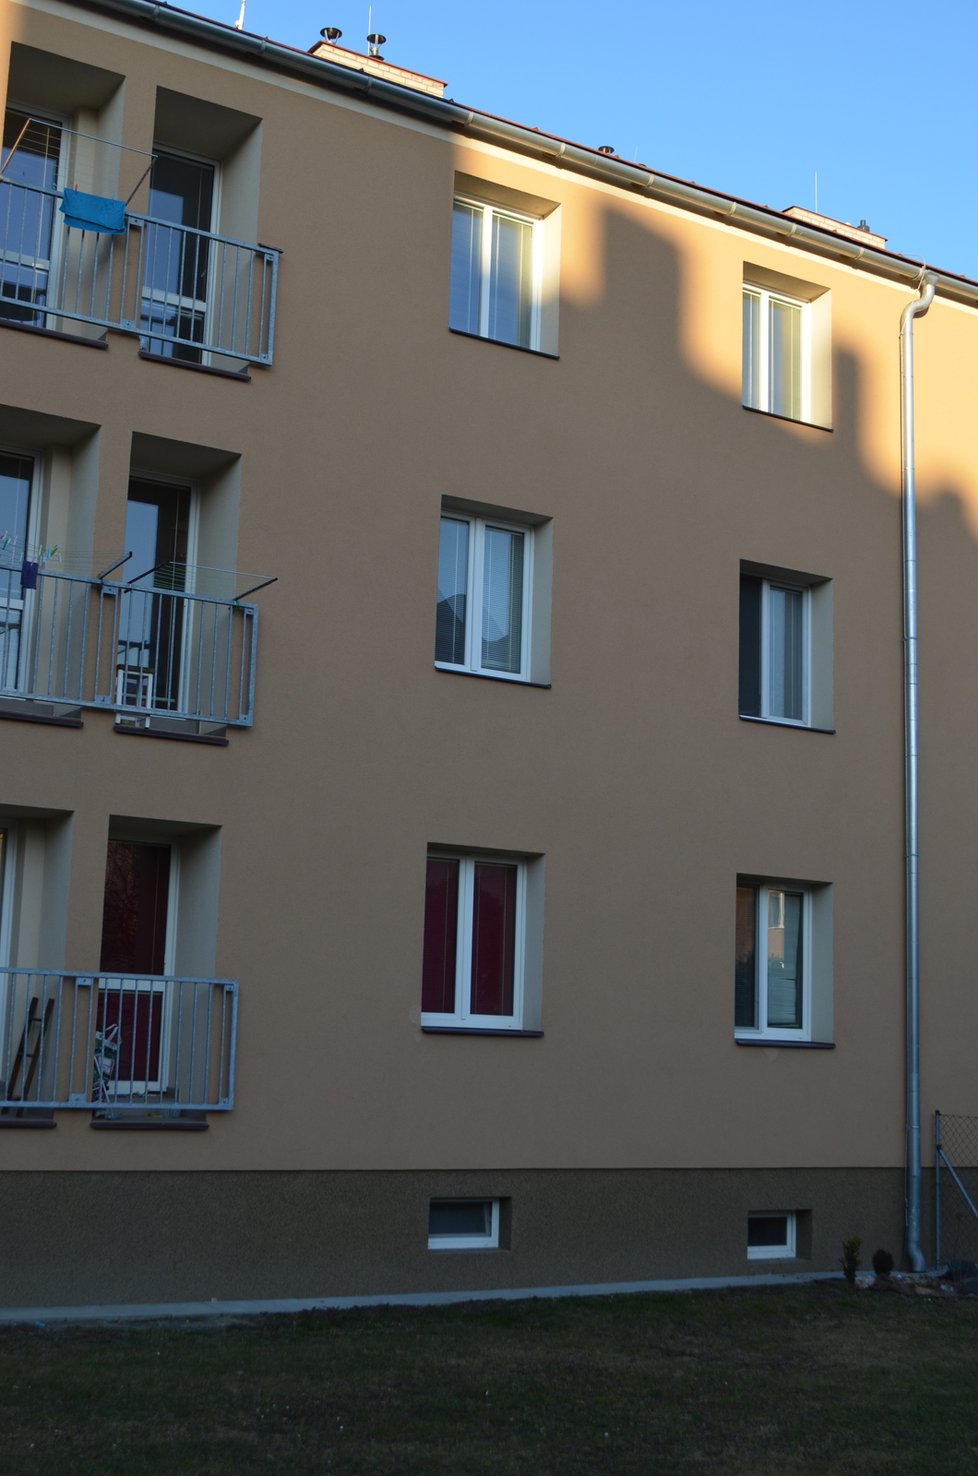 Rodinná tragédie se odehrála v tomto bytovém domě v Polní ulici v Opavě.